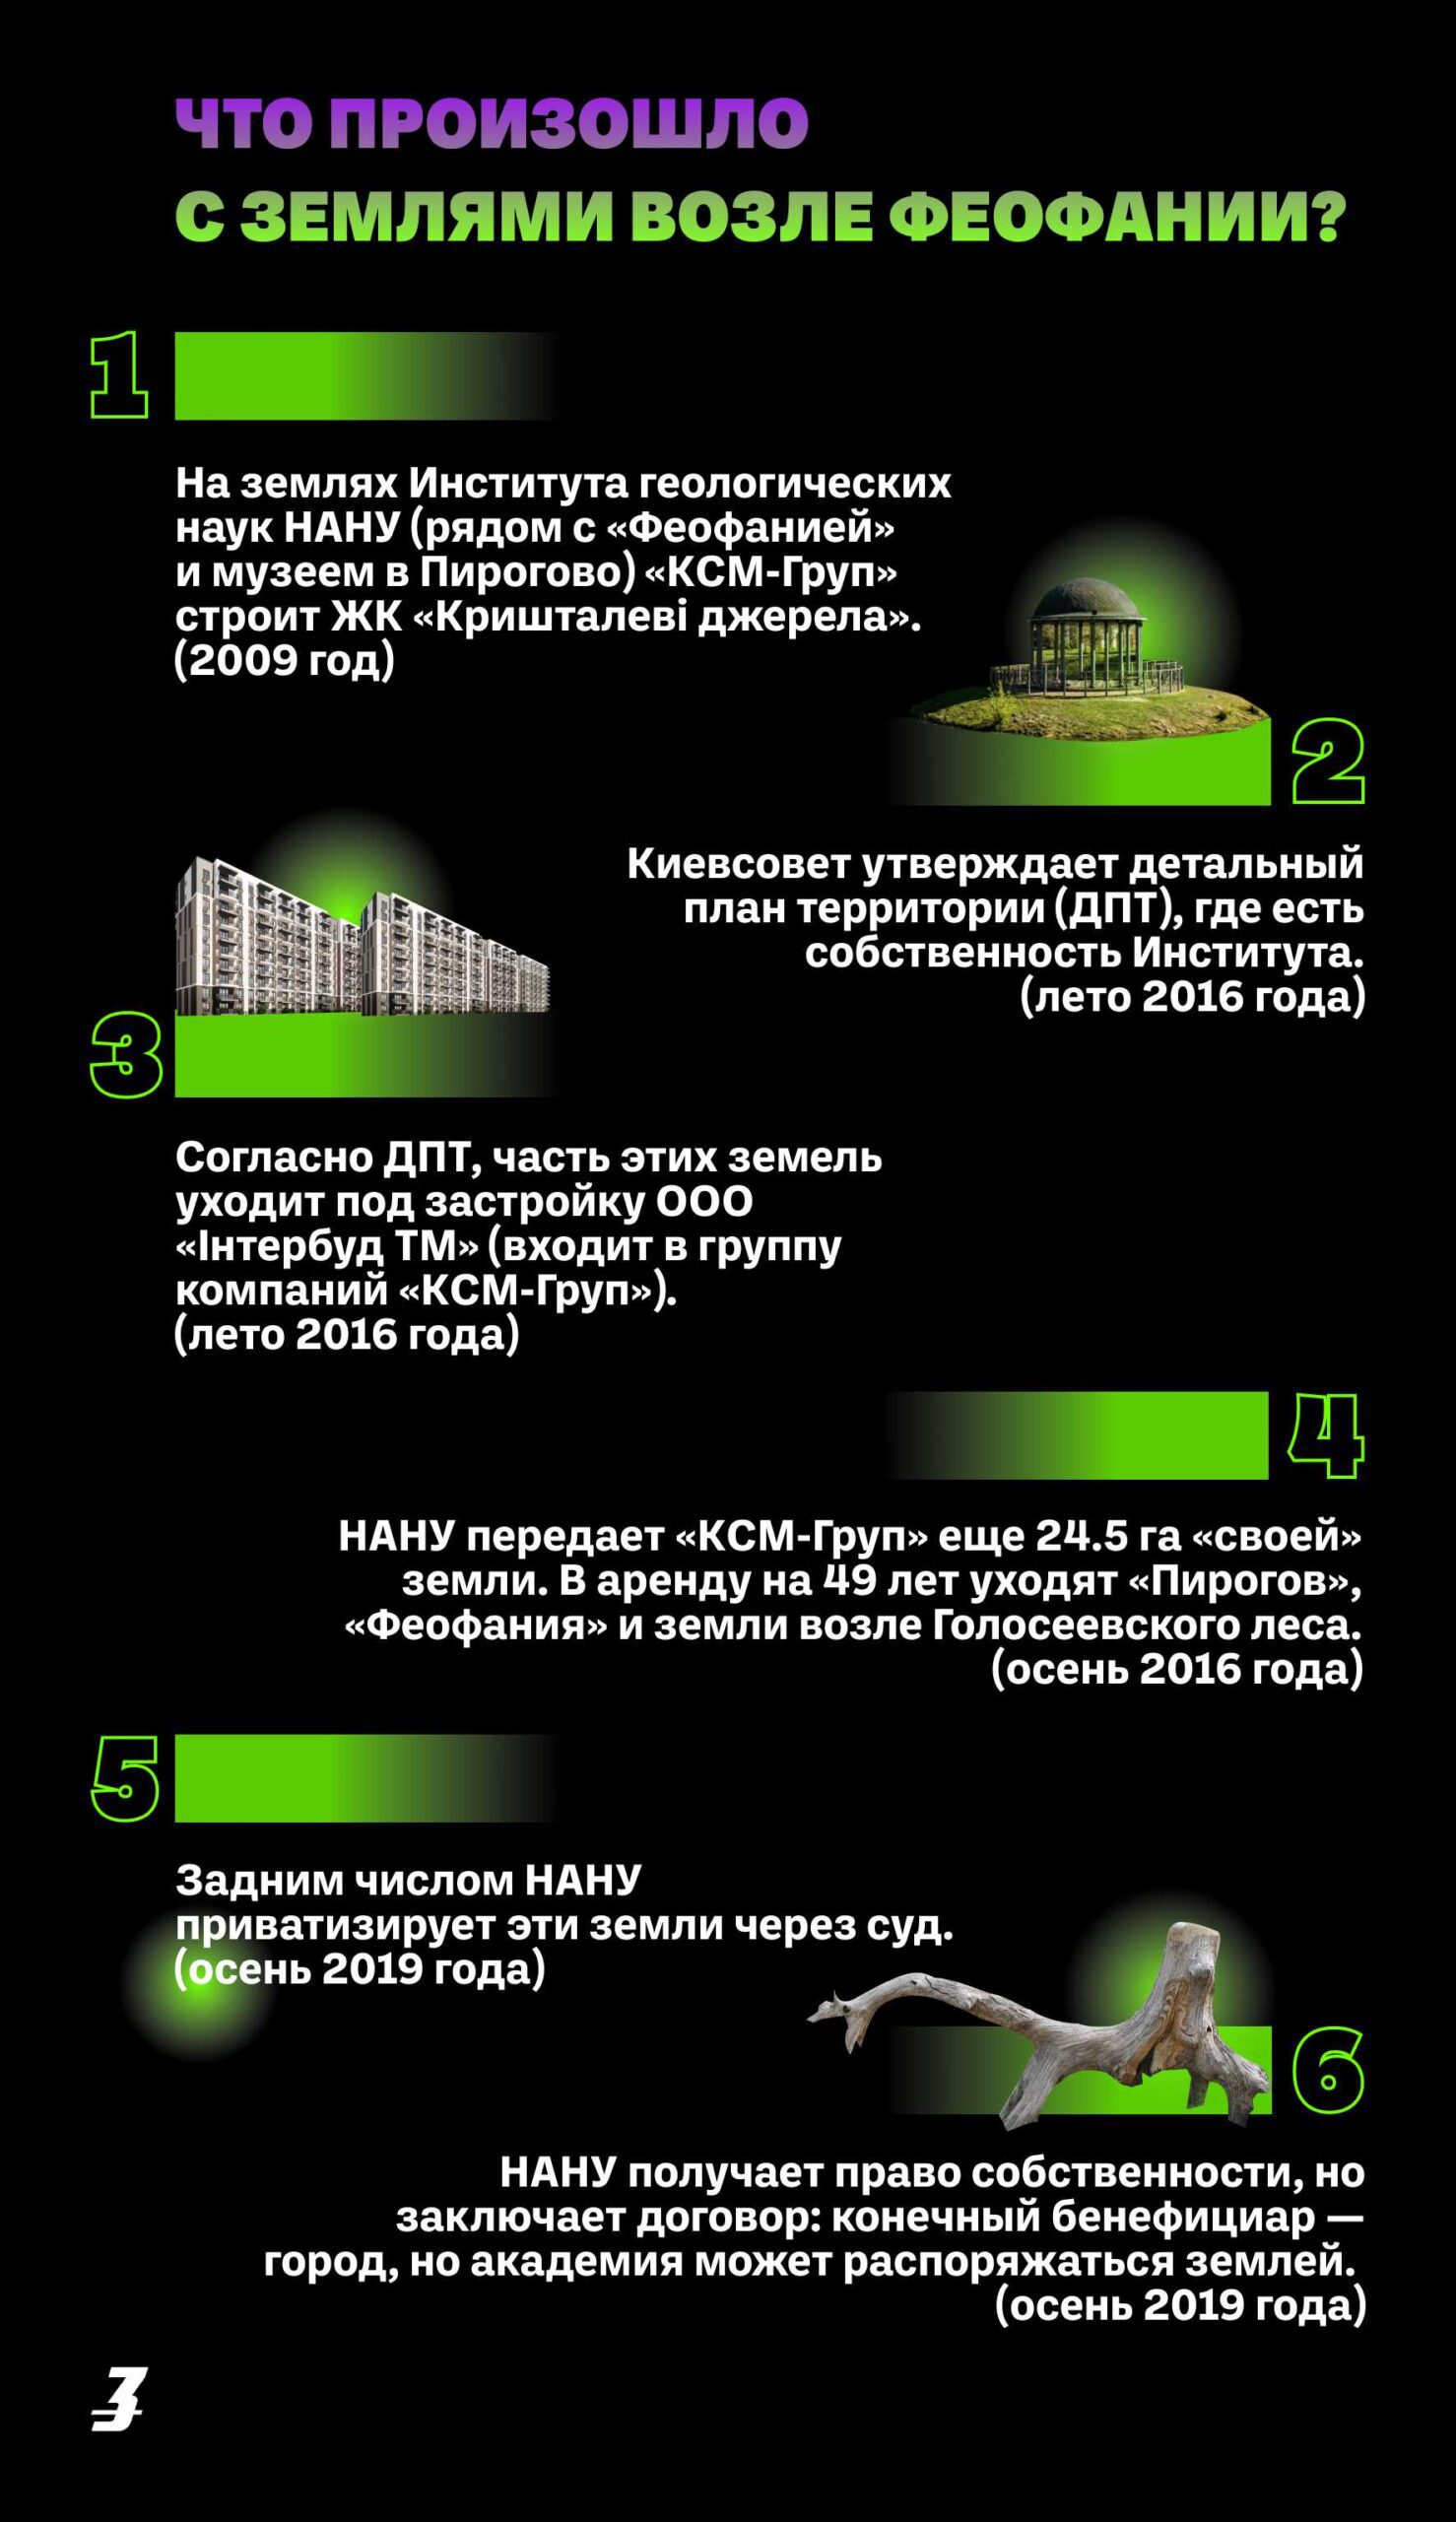 На территории киевских вузов строят ЖК и бизнес-центры. Вот по какой схеме это происходит